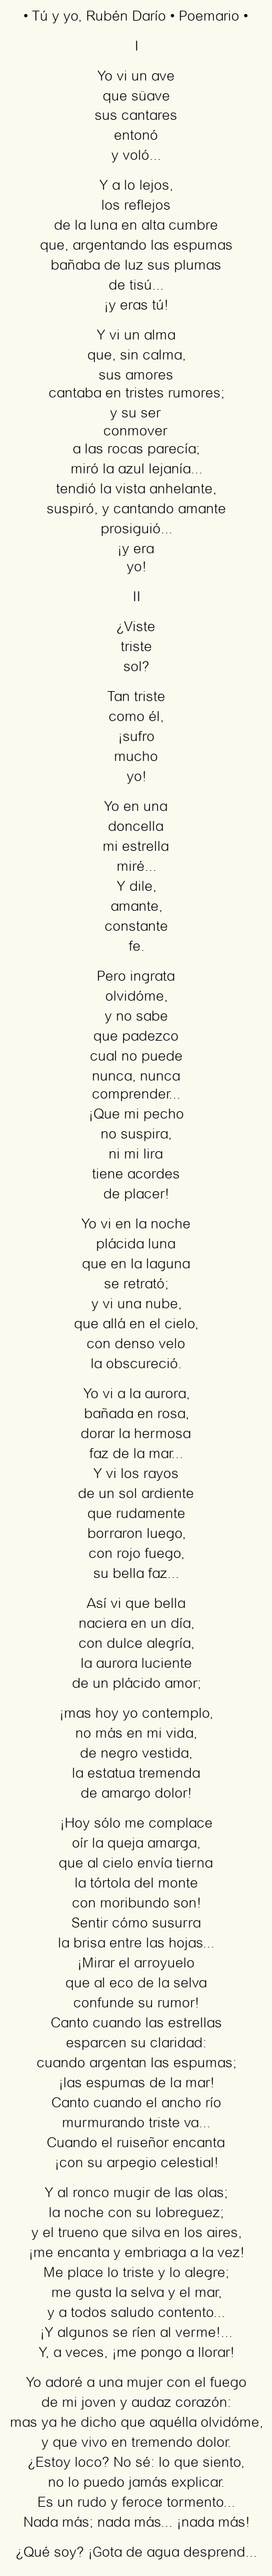 Poemas de amor de Rubén Darío: La pasión hecha verso